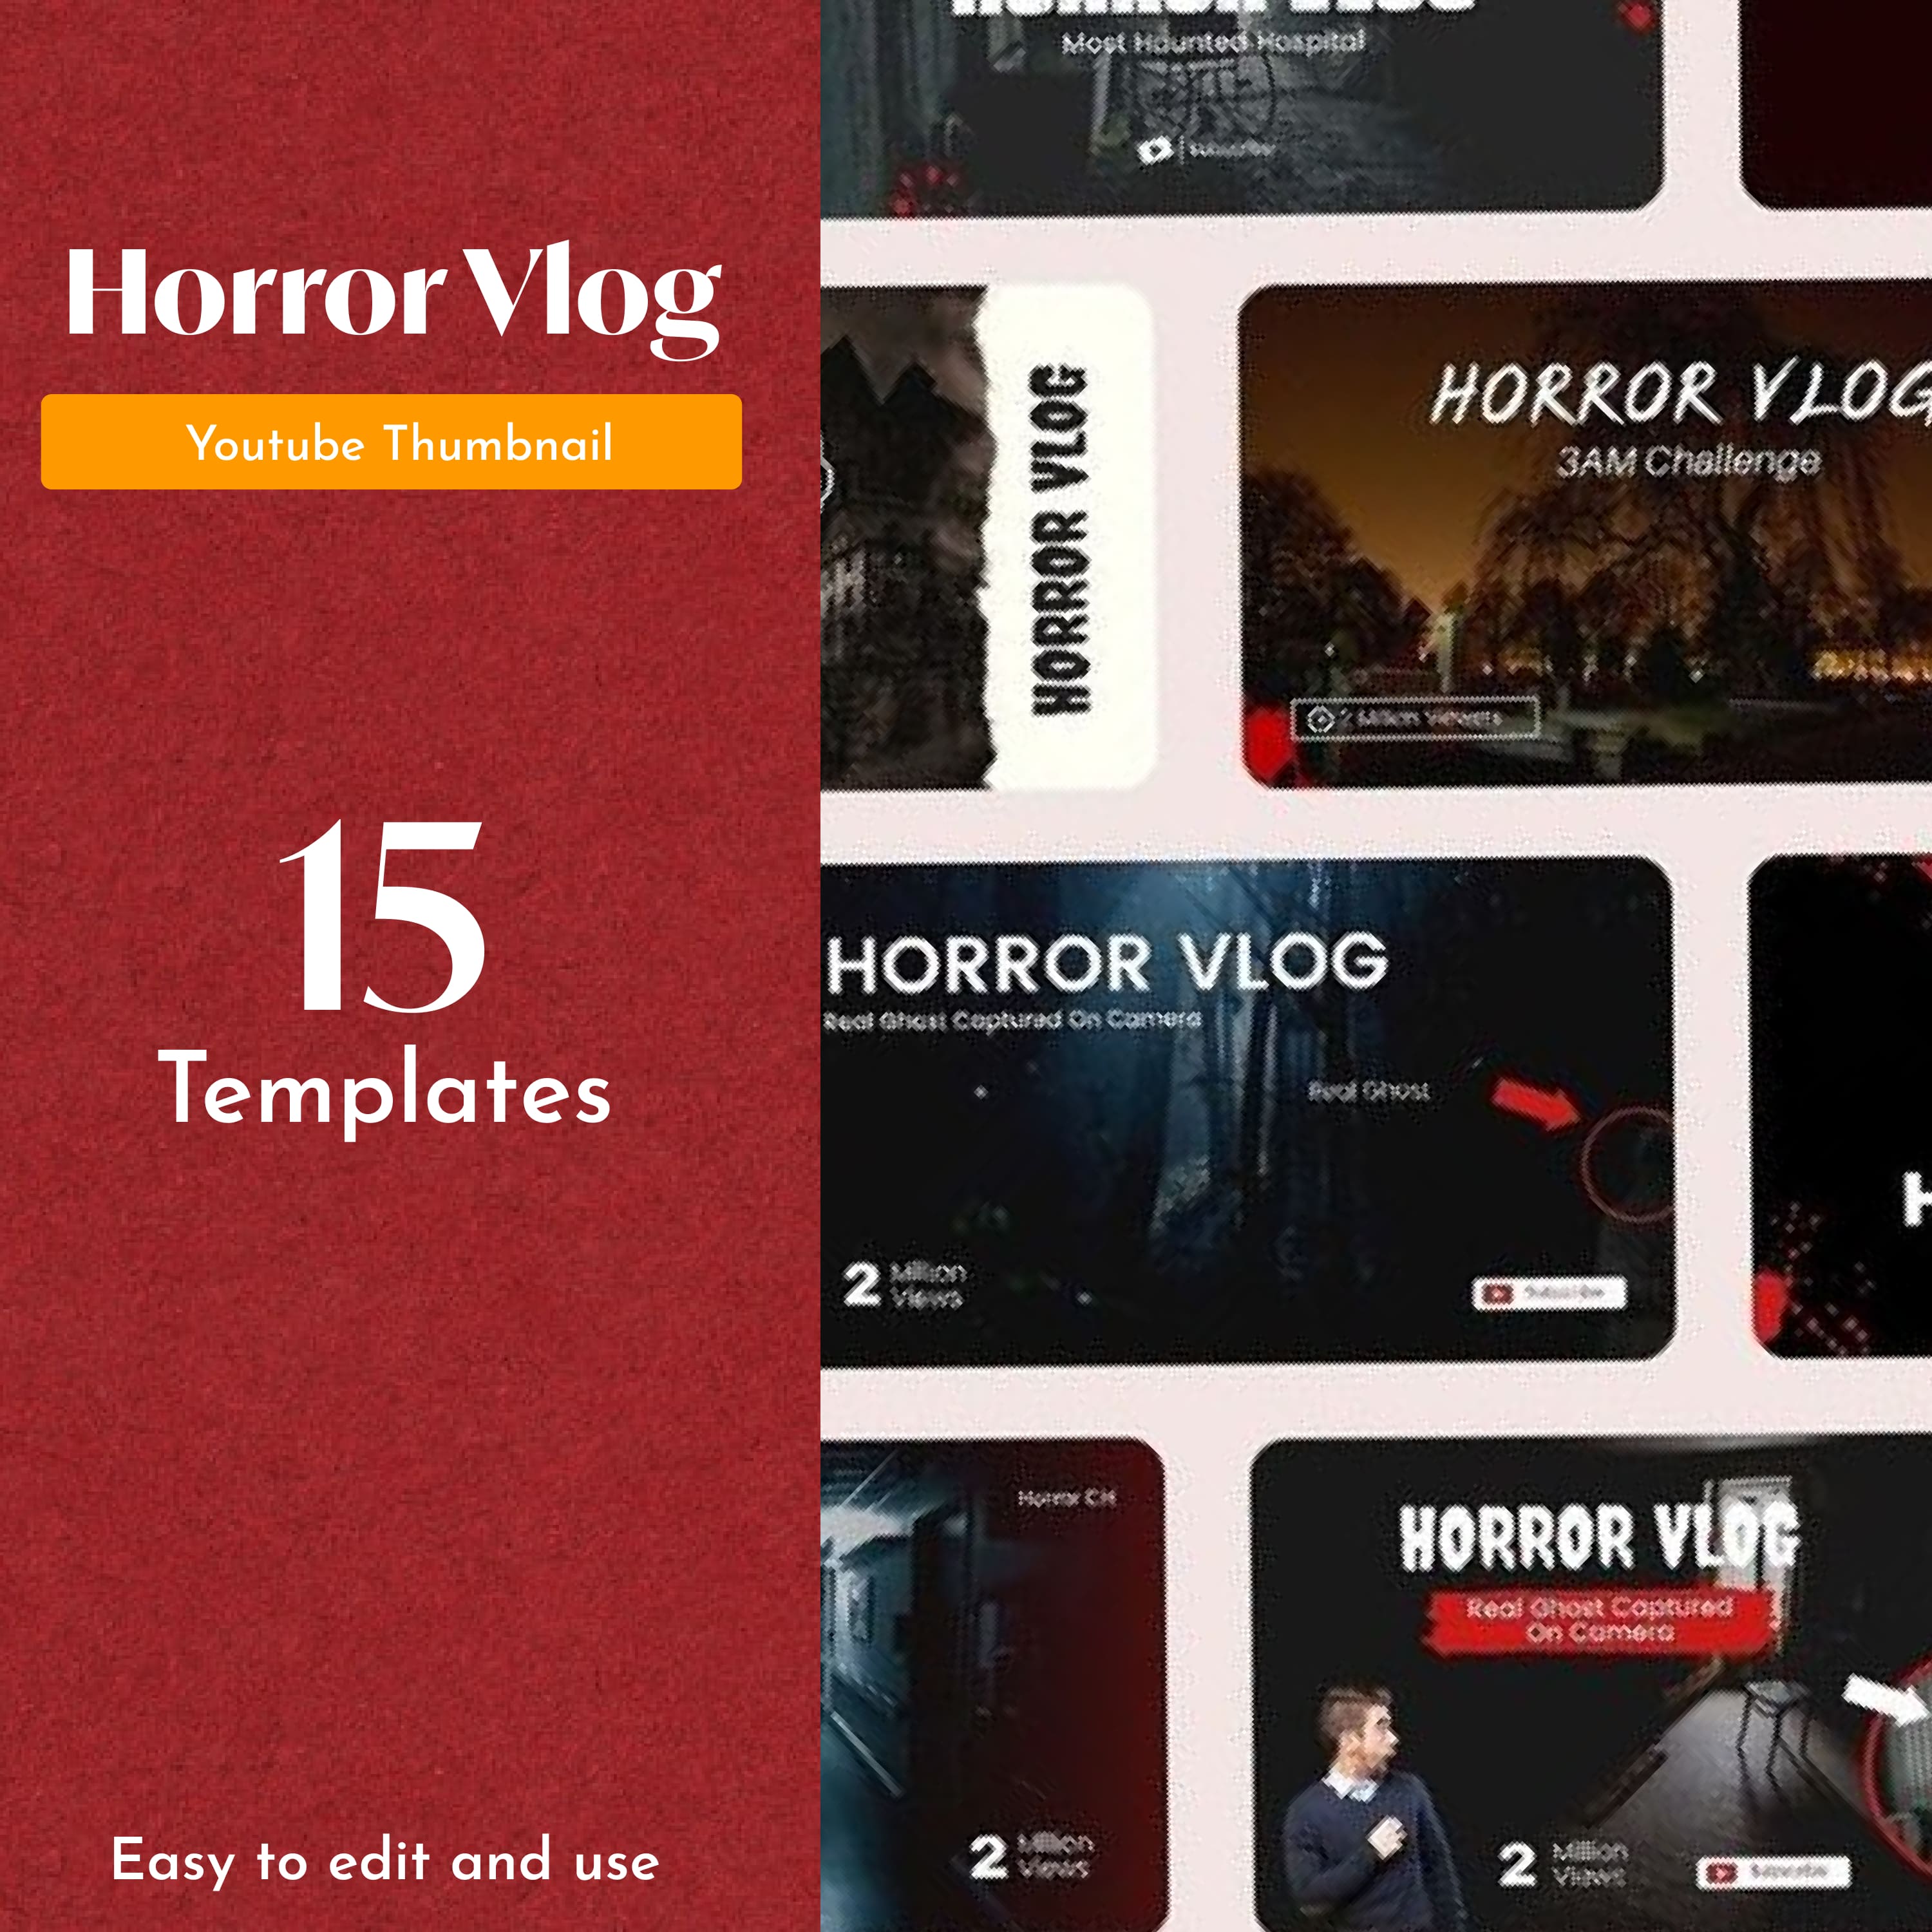 Horror Vlog Youtube Thumbnail cover.